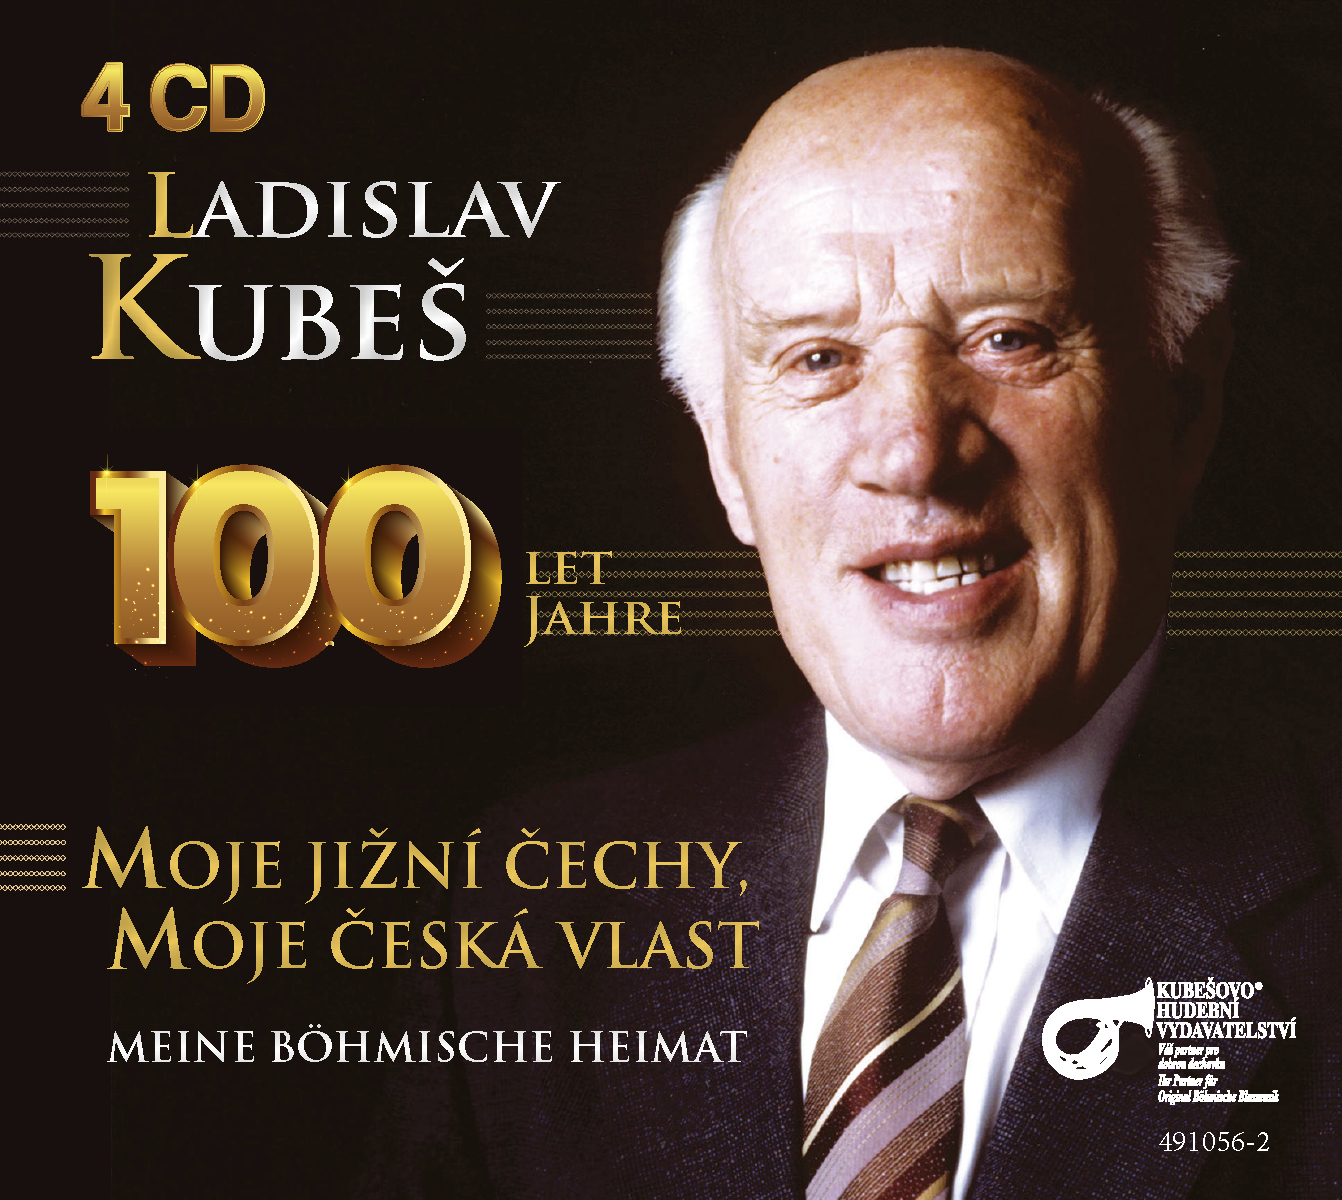 100 Jahre Ladislav Kubes 